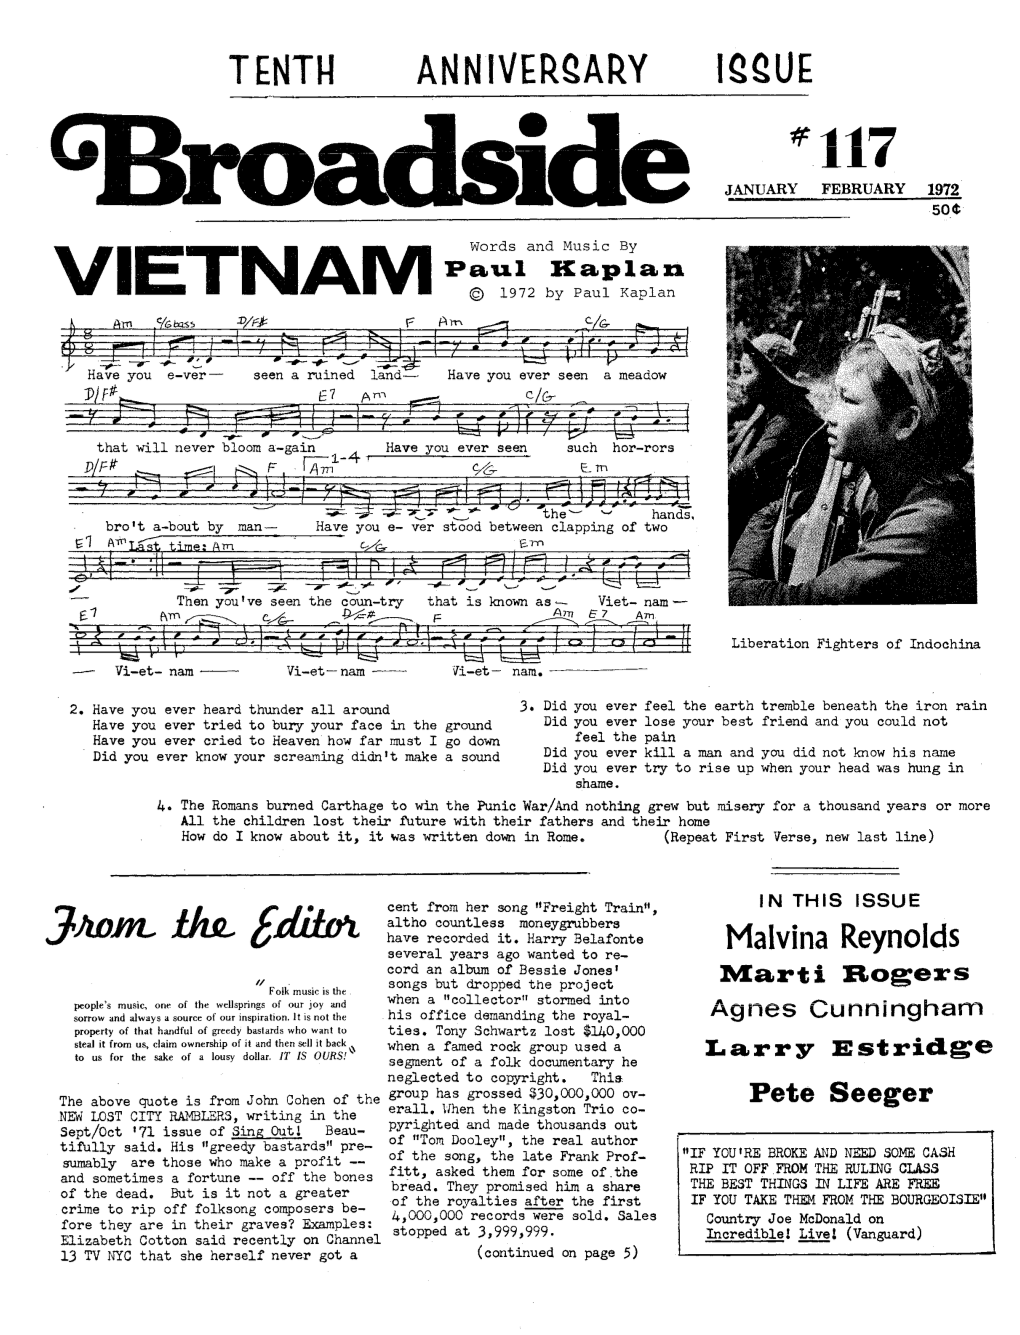 VIETNAM © 1972 by Paul Kaplan